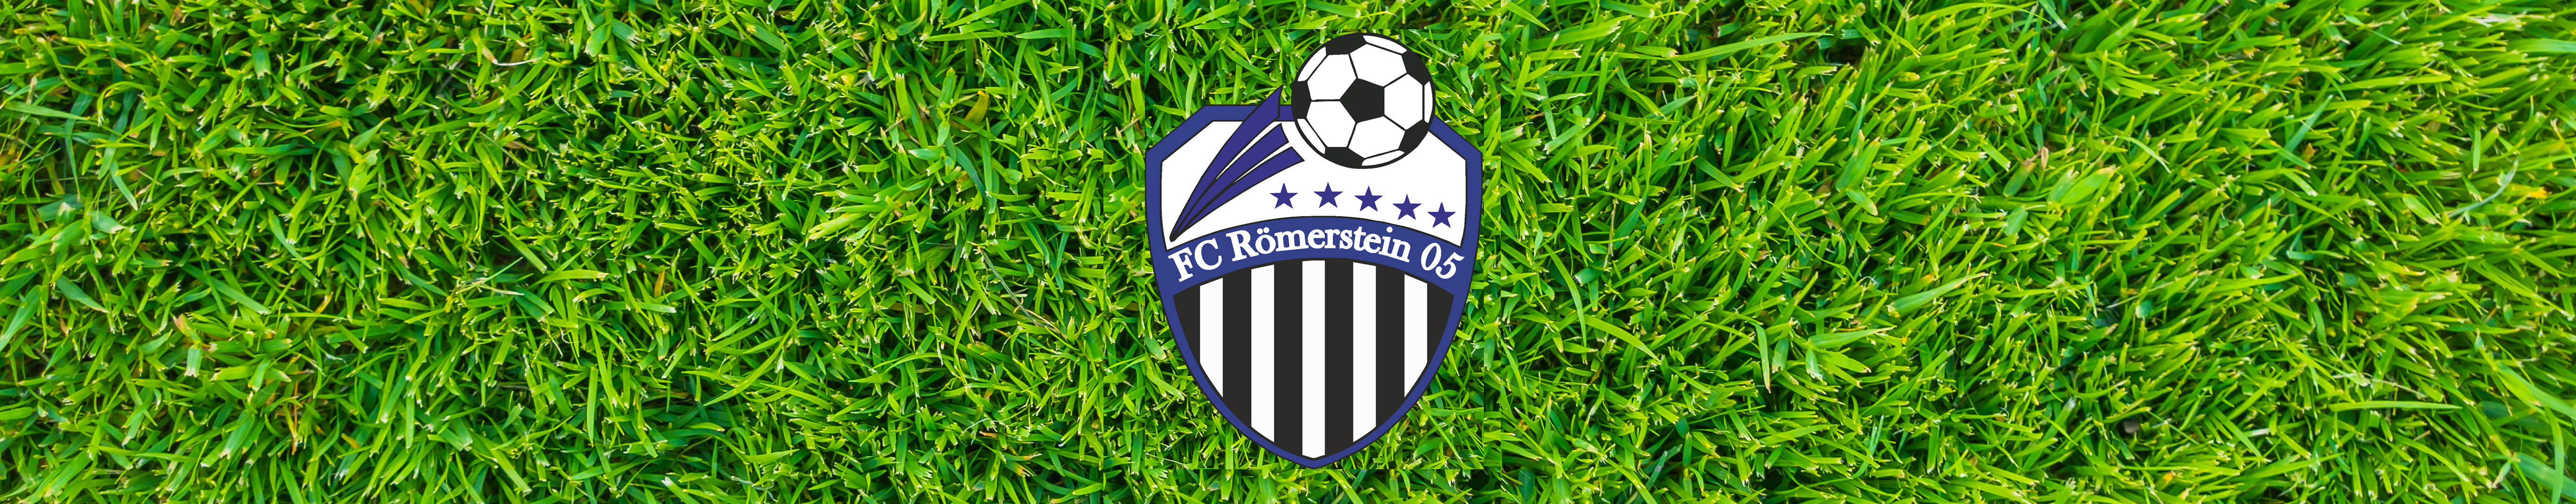 FC Römerstein 05 Title Image